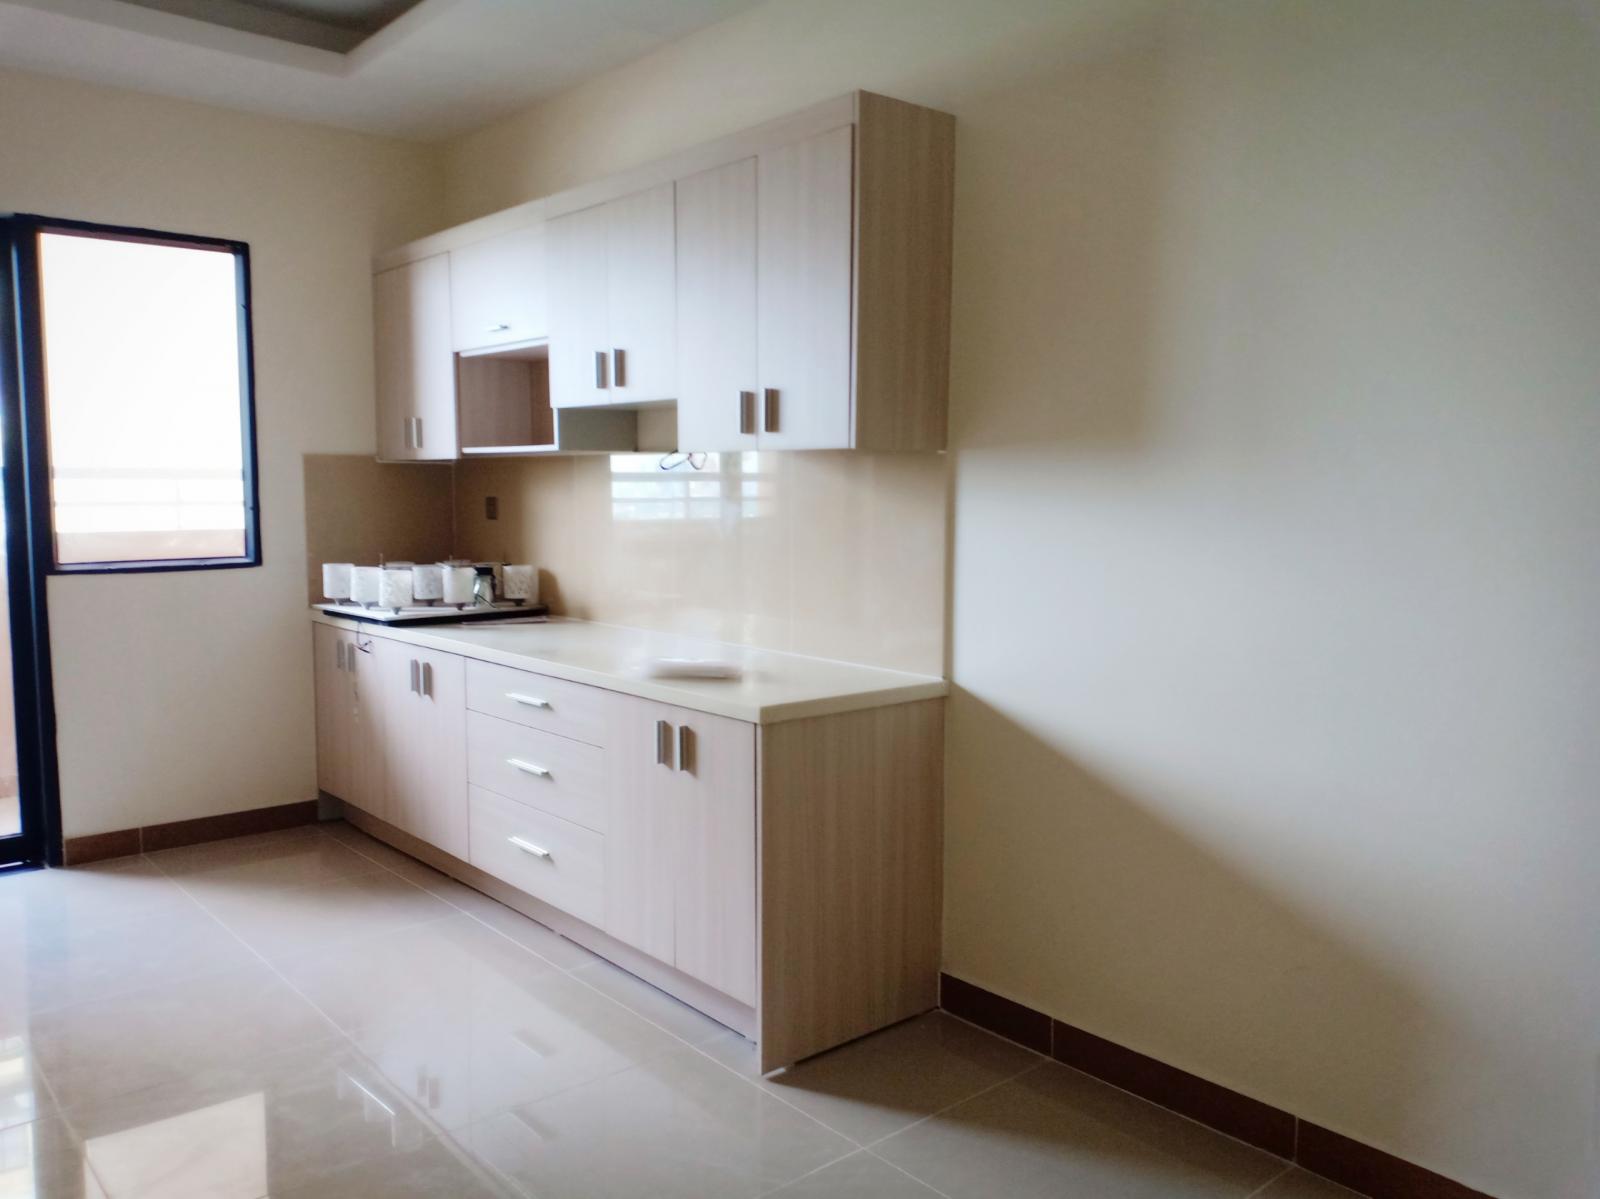 Phòng 12m2 mới sạch đẹp có nội thất tại chung cư ERA TOWN Q7.0909.448.284 Hiền